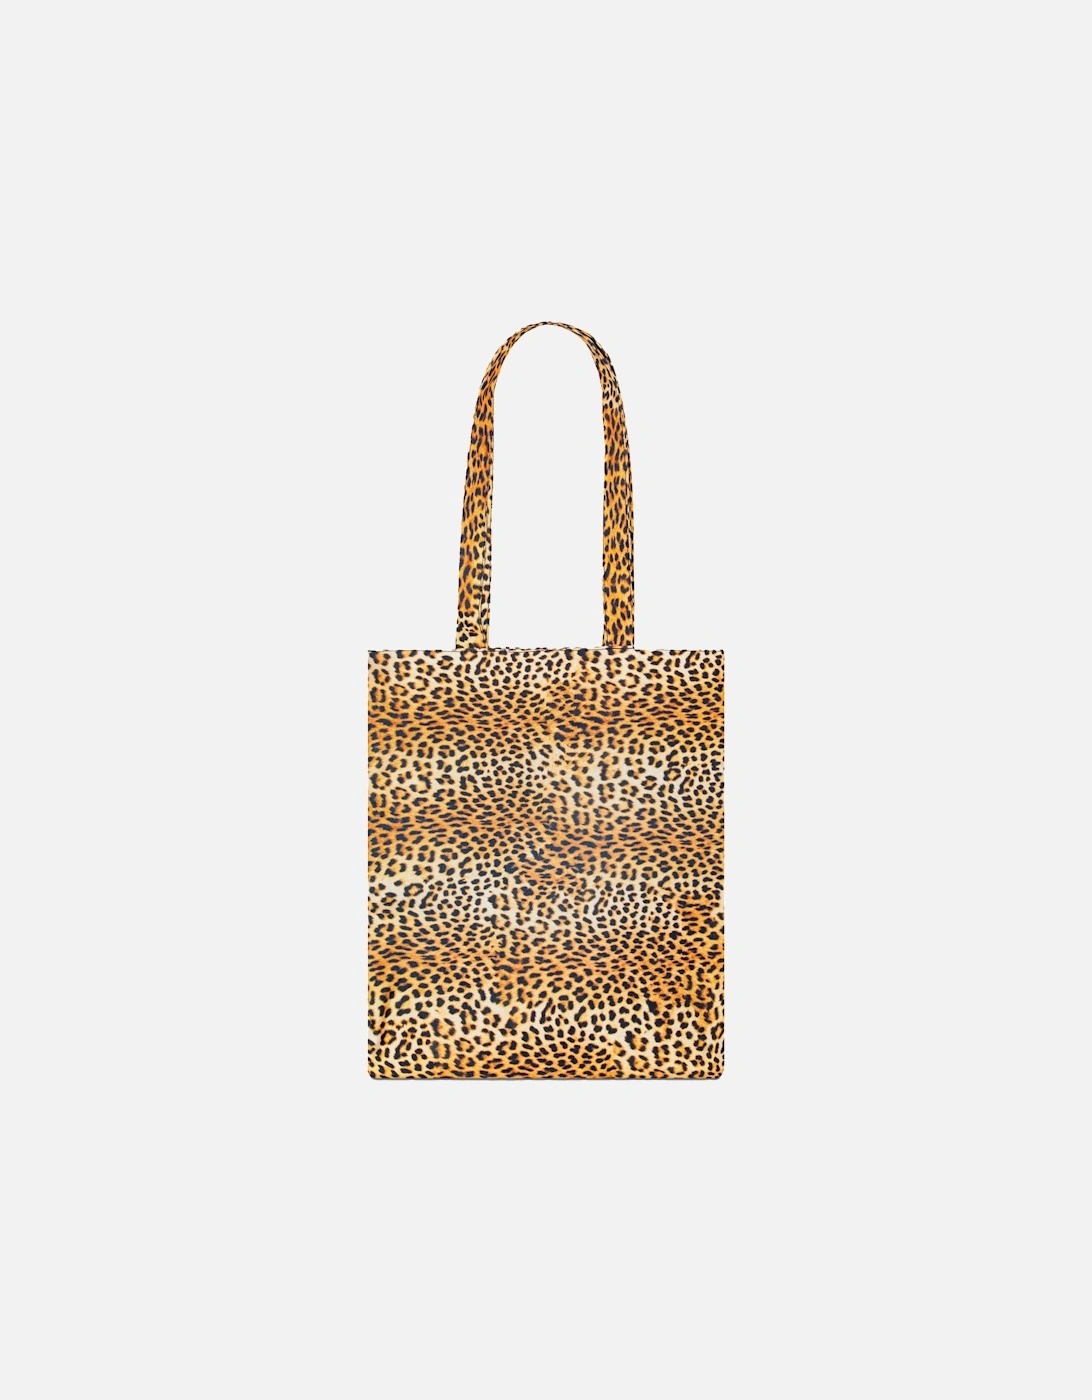 Leopard Tote Bag (Multicoloured)